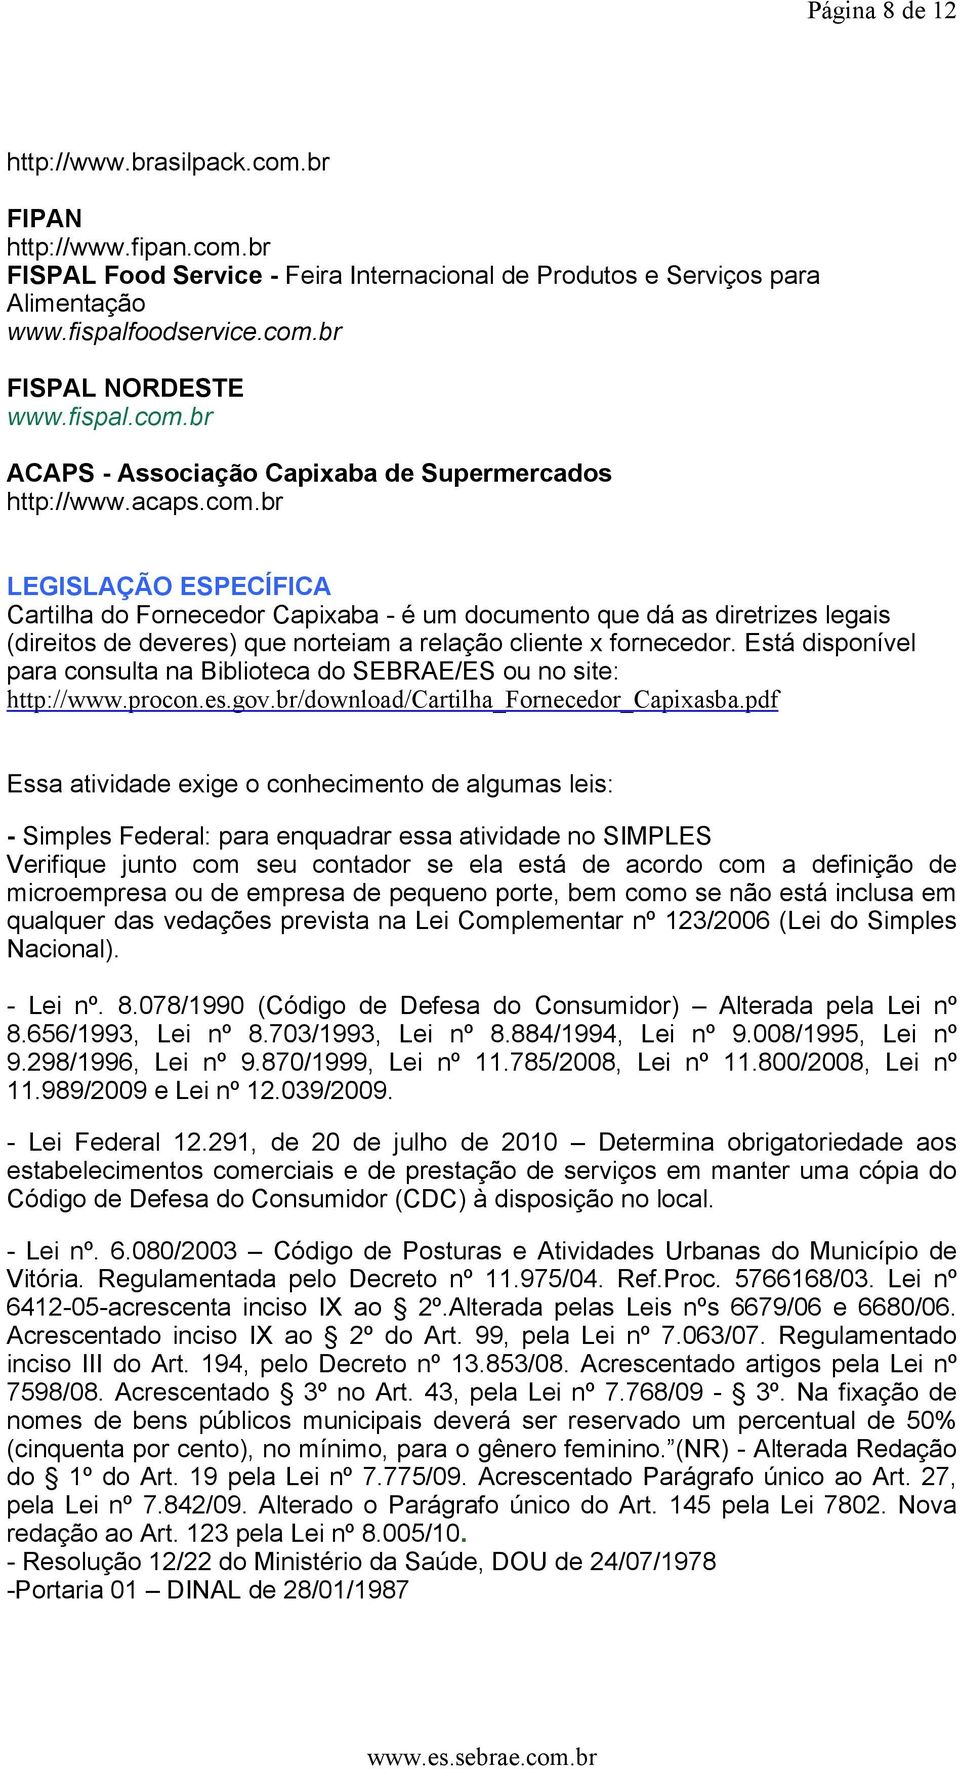 Está disponível para consulta na Biblioteca do SEBRAE/ES ou no site: http://www.procon.es.gov.br/download/cartilha_fornecedor_capixasba.